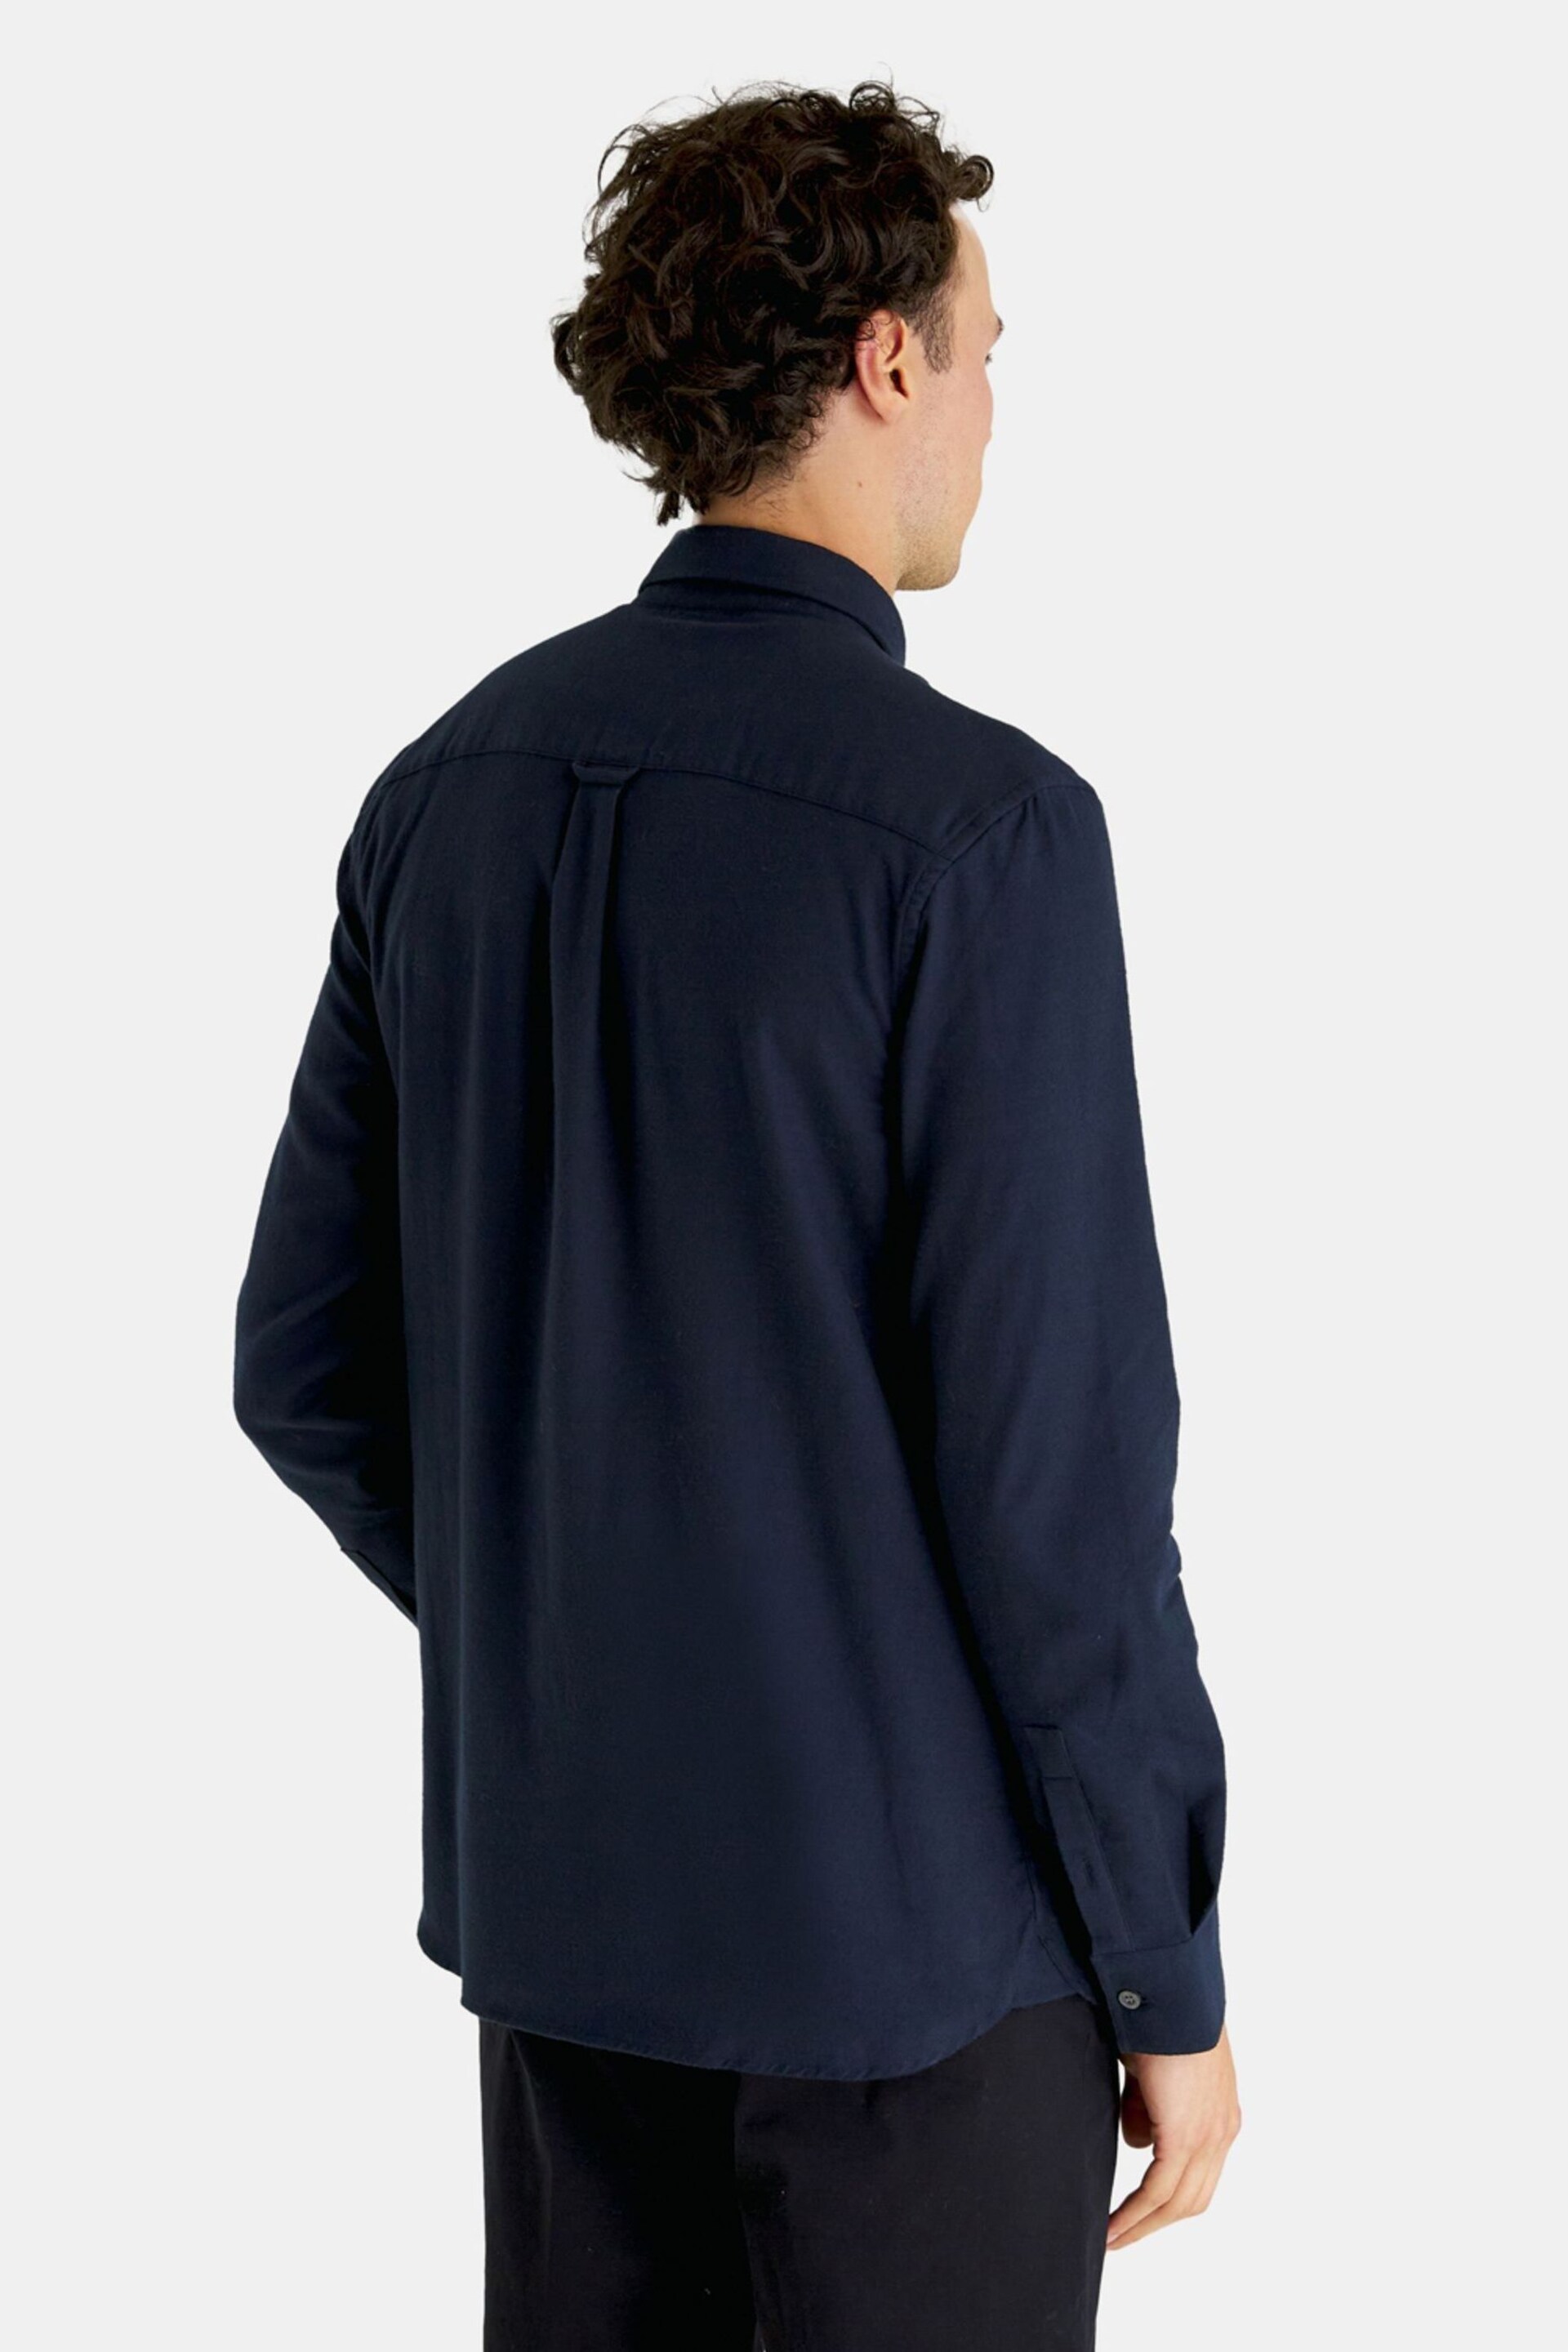 Lyle & Scott Blue Plain Flannel Shirt - Image 6 of 9